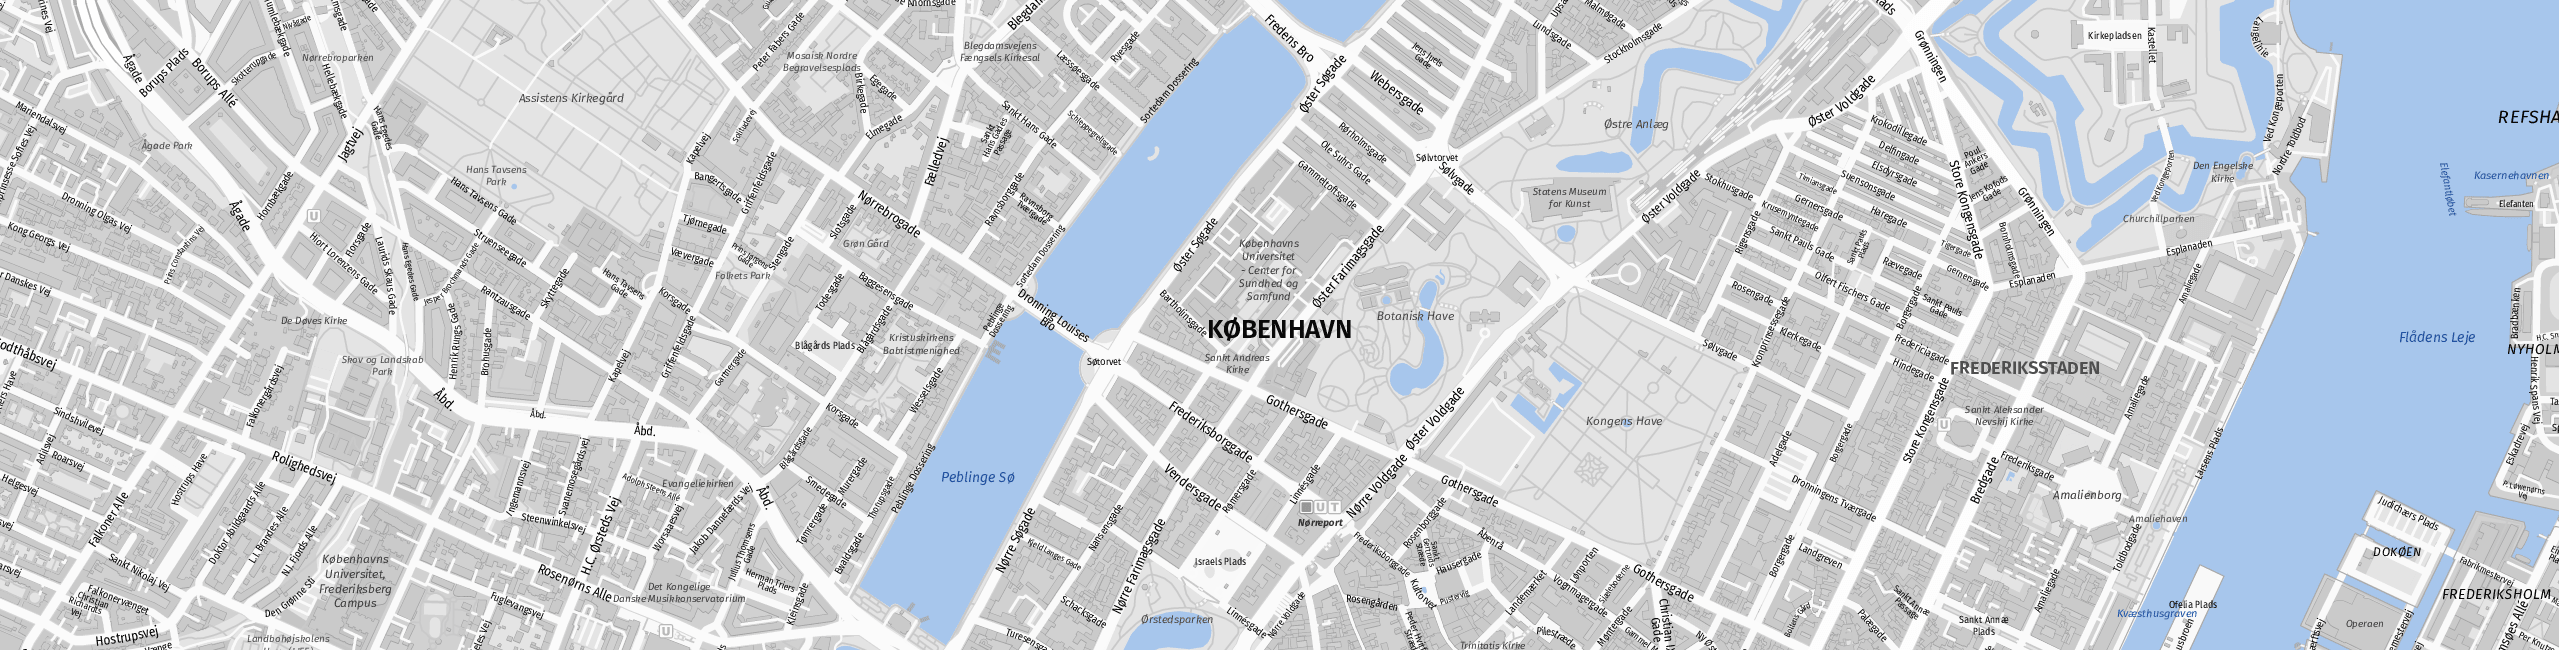 Stadtplan Copenhagen zum Downloaden.